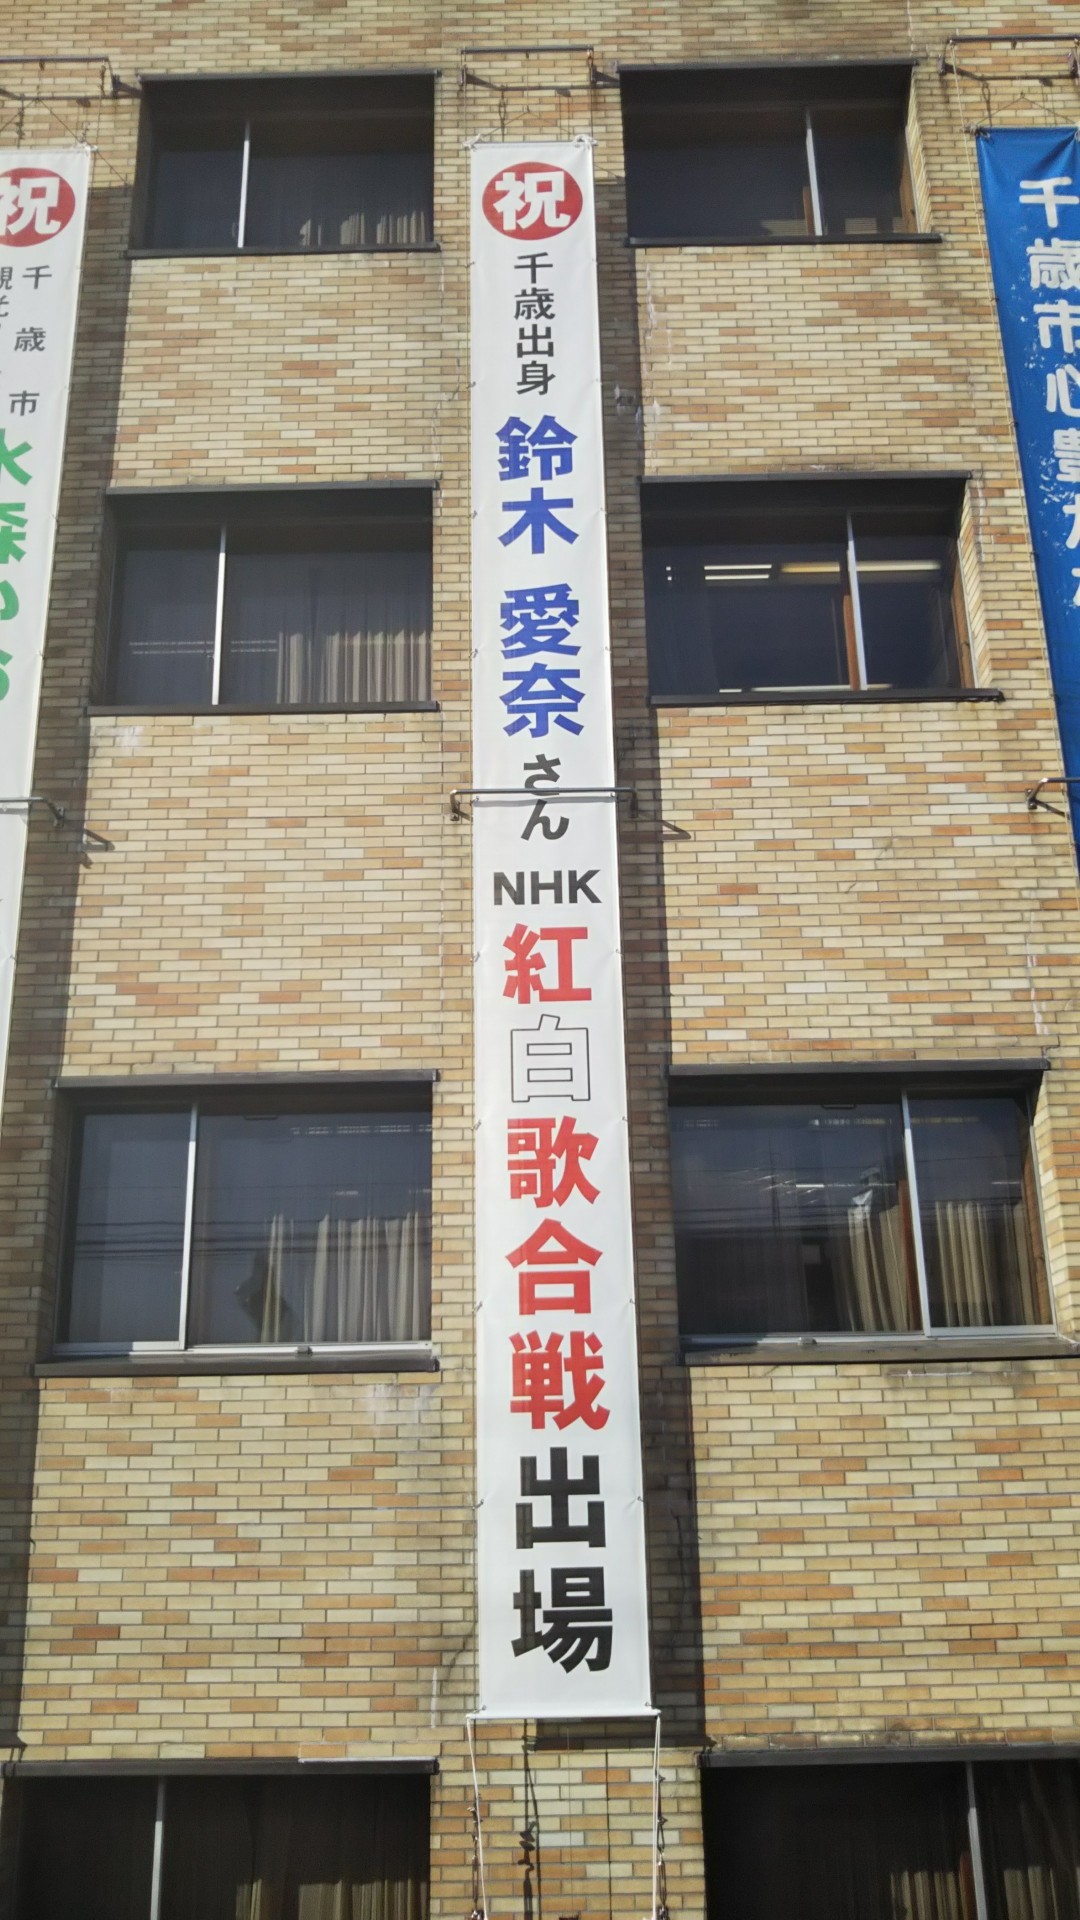 市役所に設置された鈴木愛奈さん祝福の懸垂幕